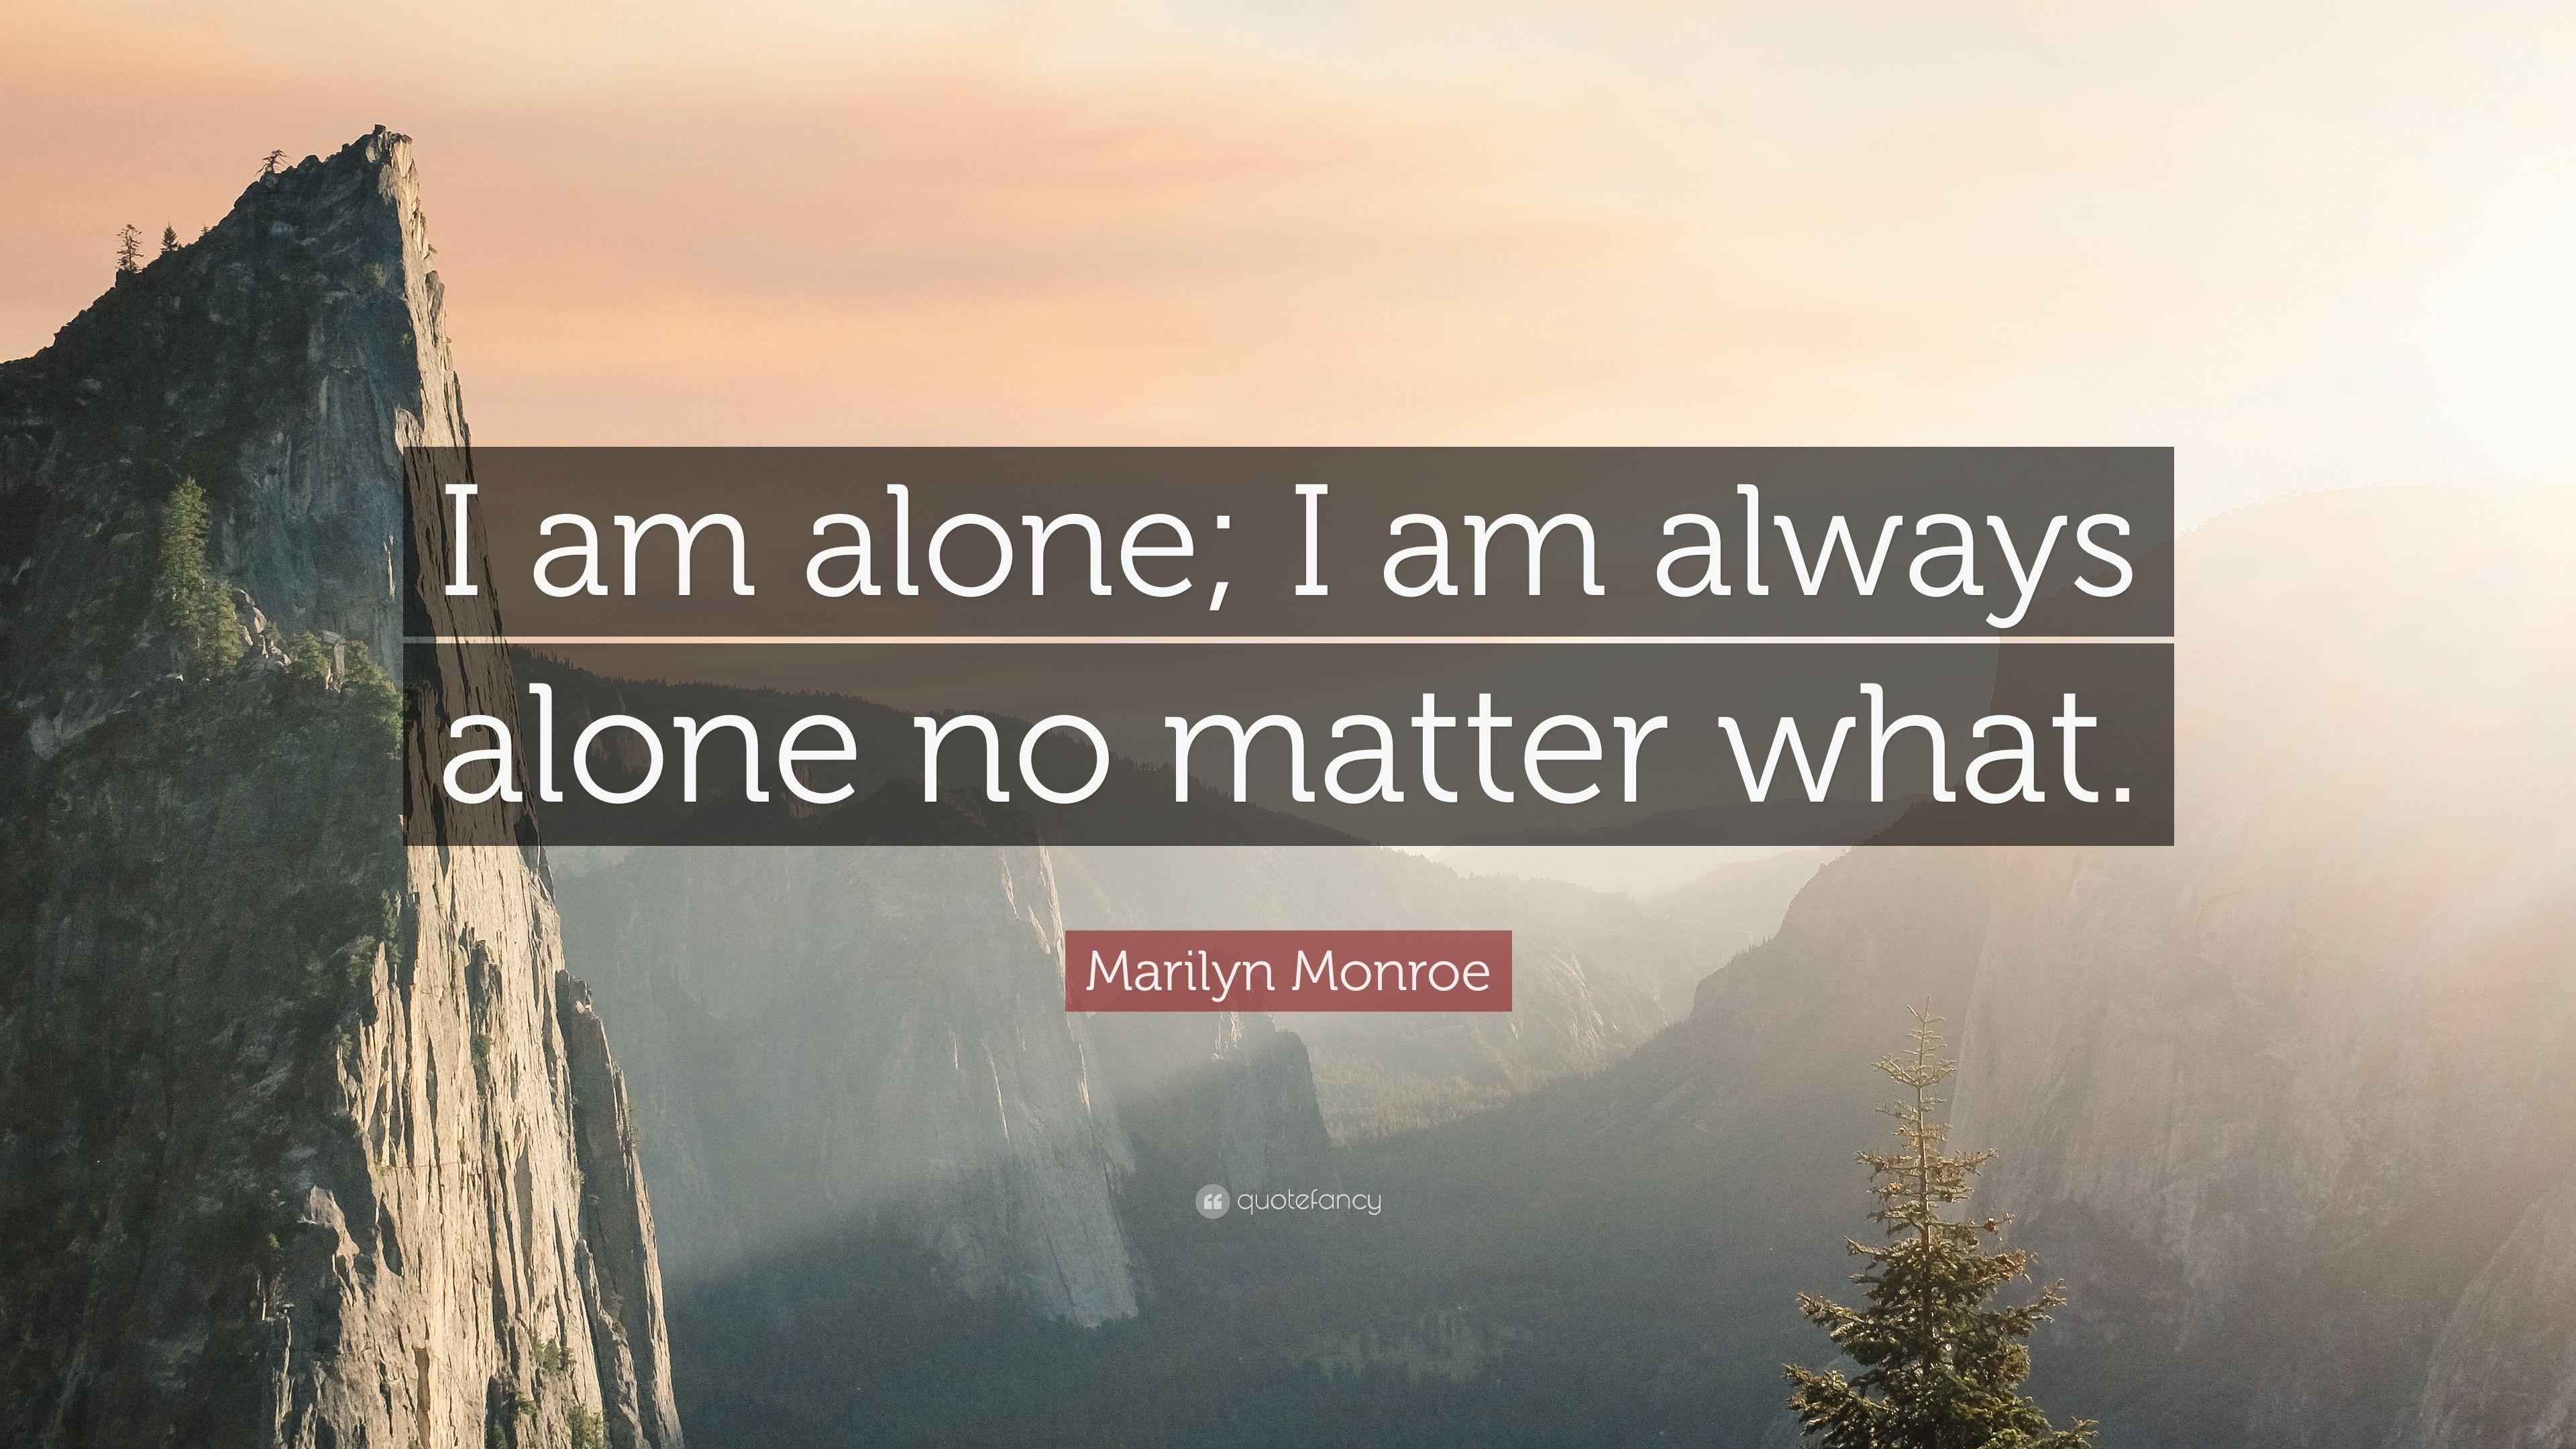 3840x2160 Marilyn Monroe Trích dẫn: “Tôi chỉ có một mình;  Tôi luôn cô đơn bất kể điều gì